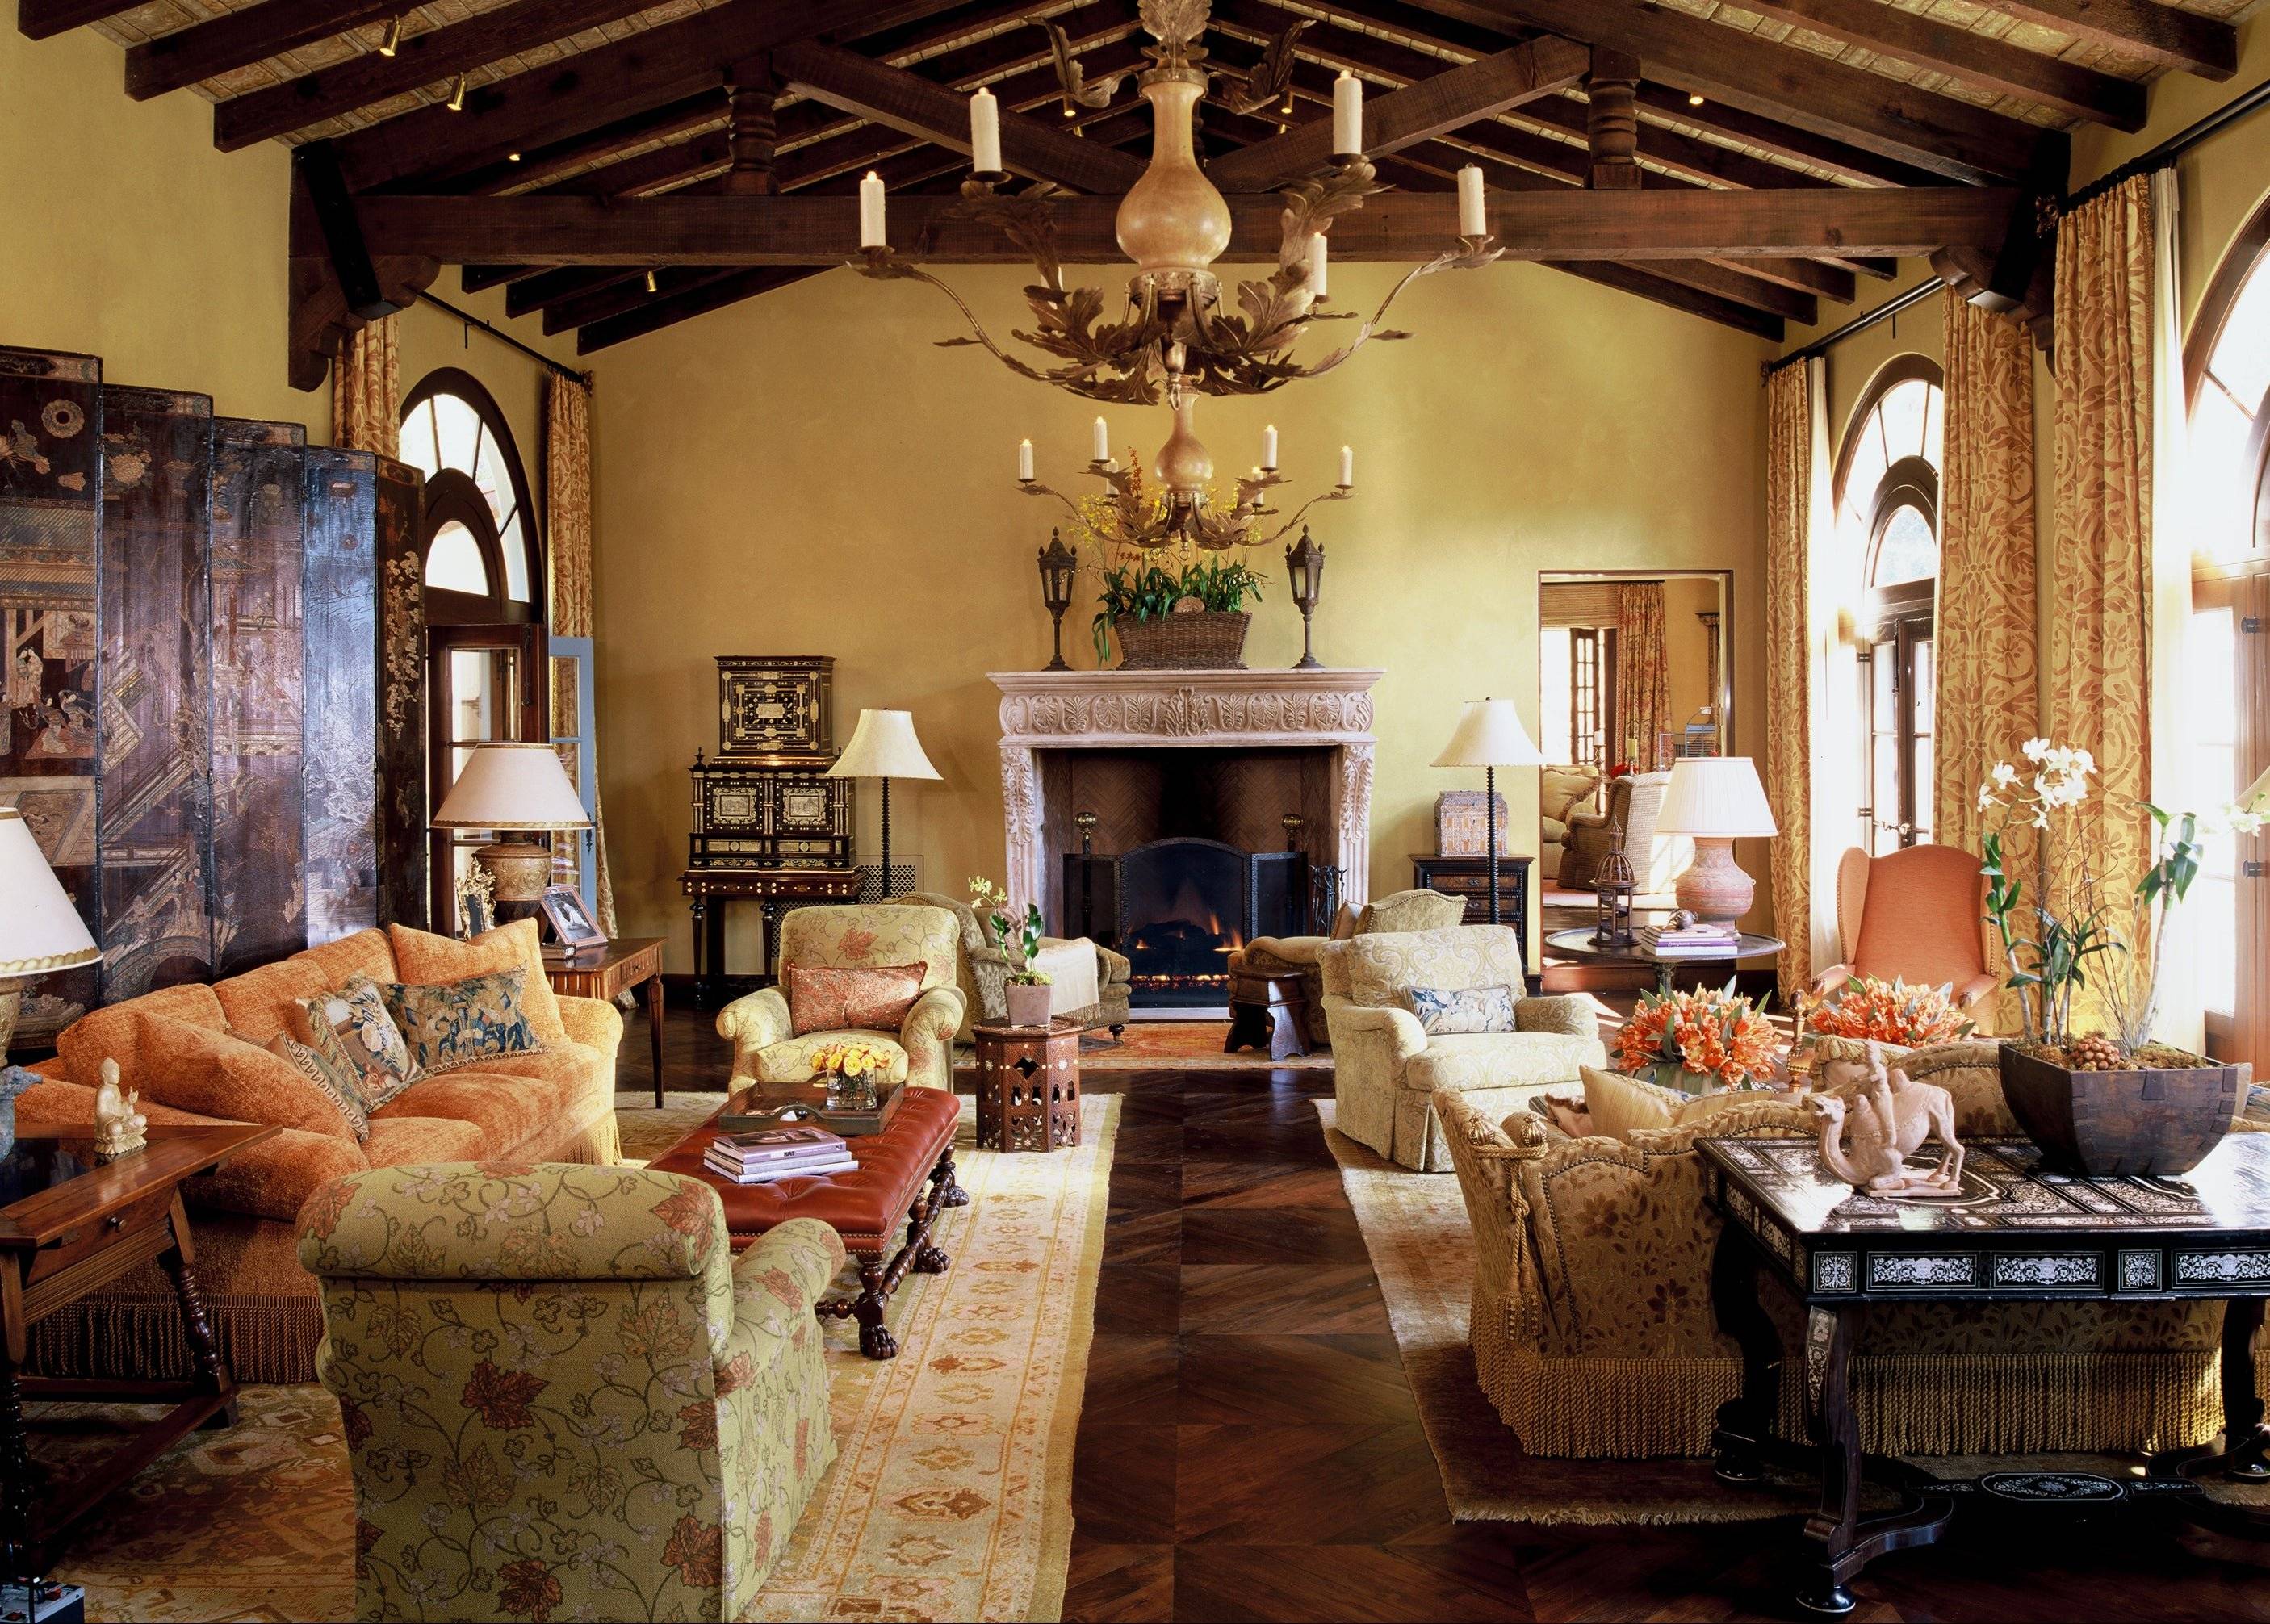 Тосканский стиль в интерьере дома - 3 совета дизайнера